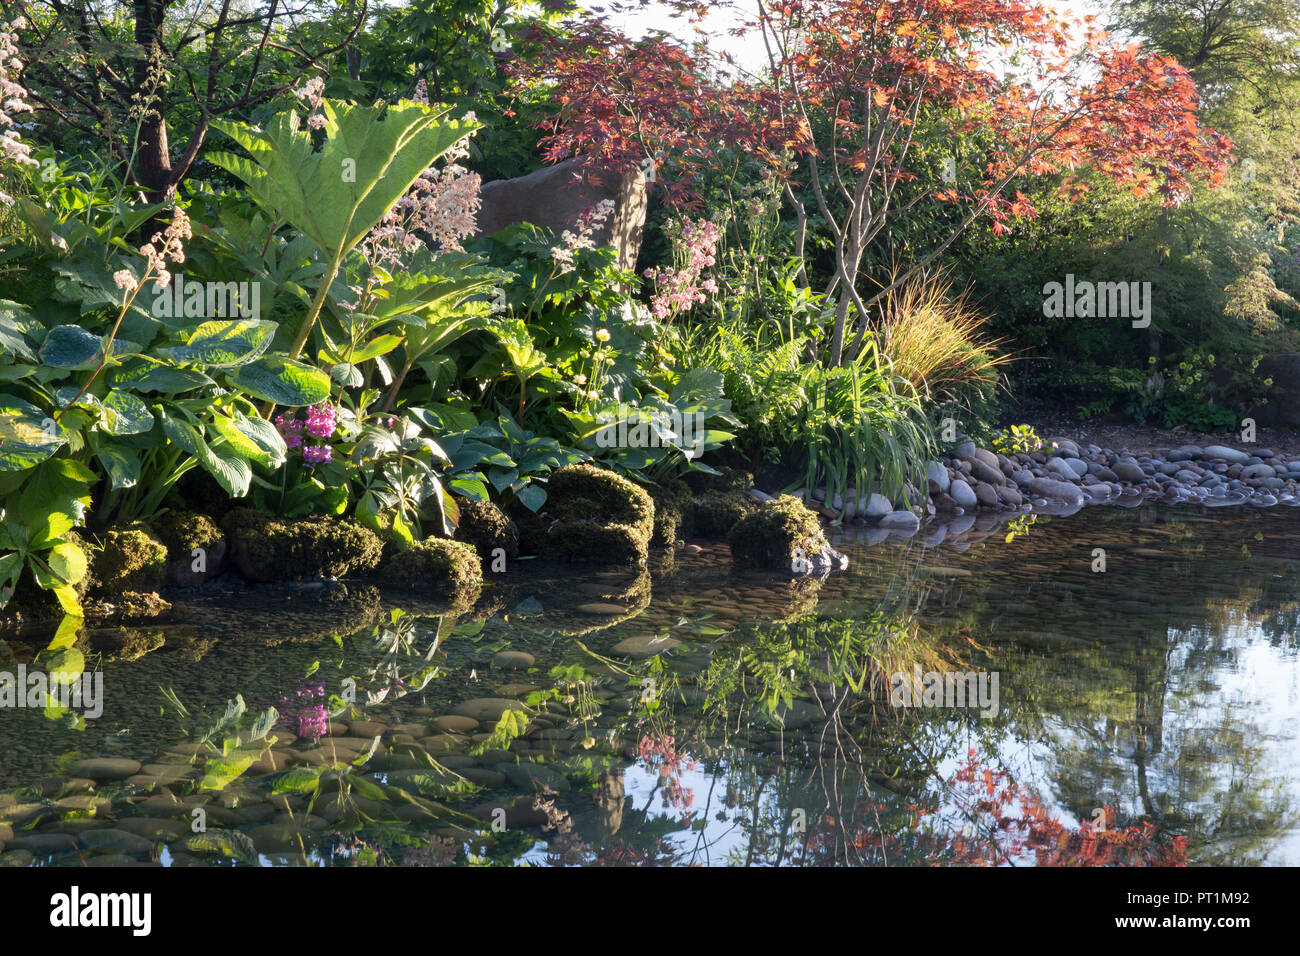 Japanischer Garten großer Teich Wasserspiel mit Moos bedeckten Steinen mit, Gunnera manicata - Rodgersia aesculifolia - Acer palmatum Bäume - England UK Stockfoto